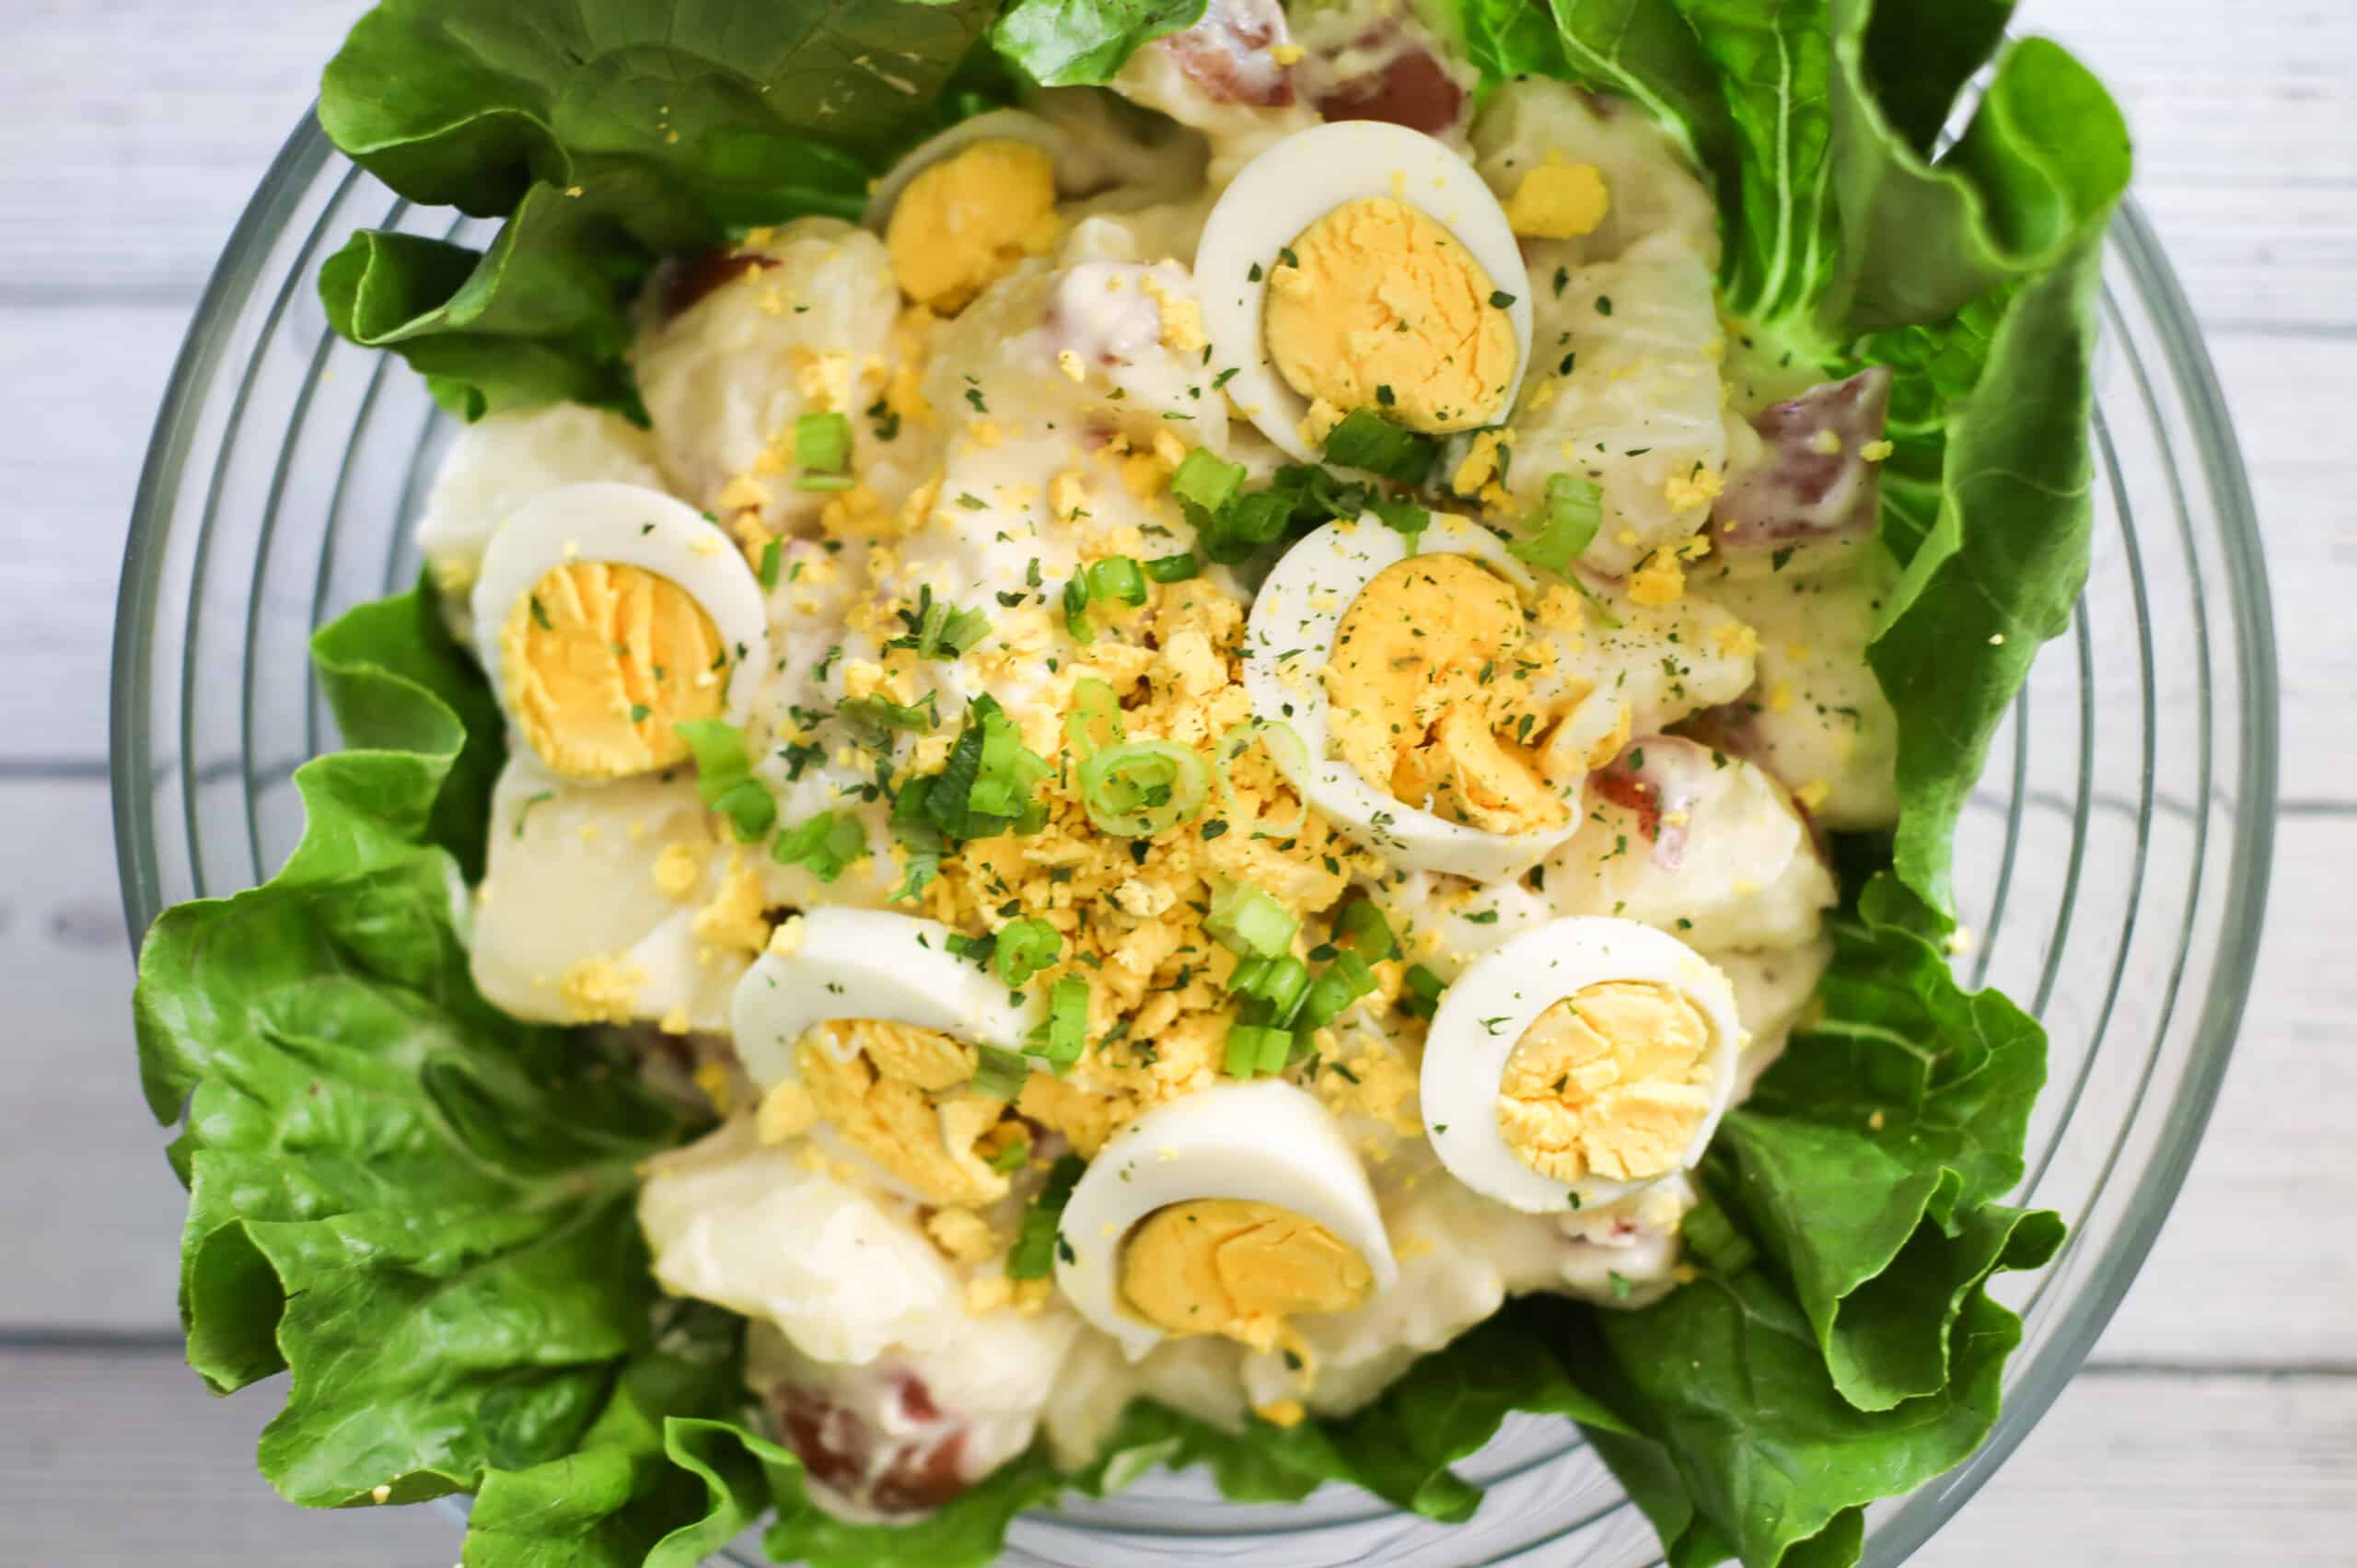 Potato Salad made with Mayo and Lemon